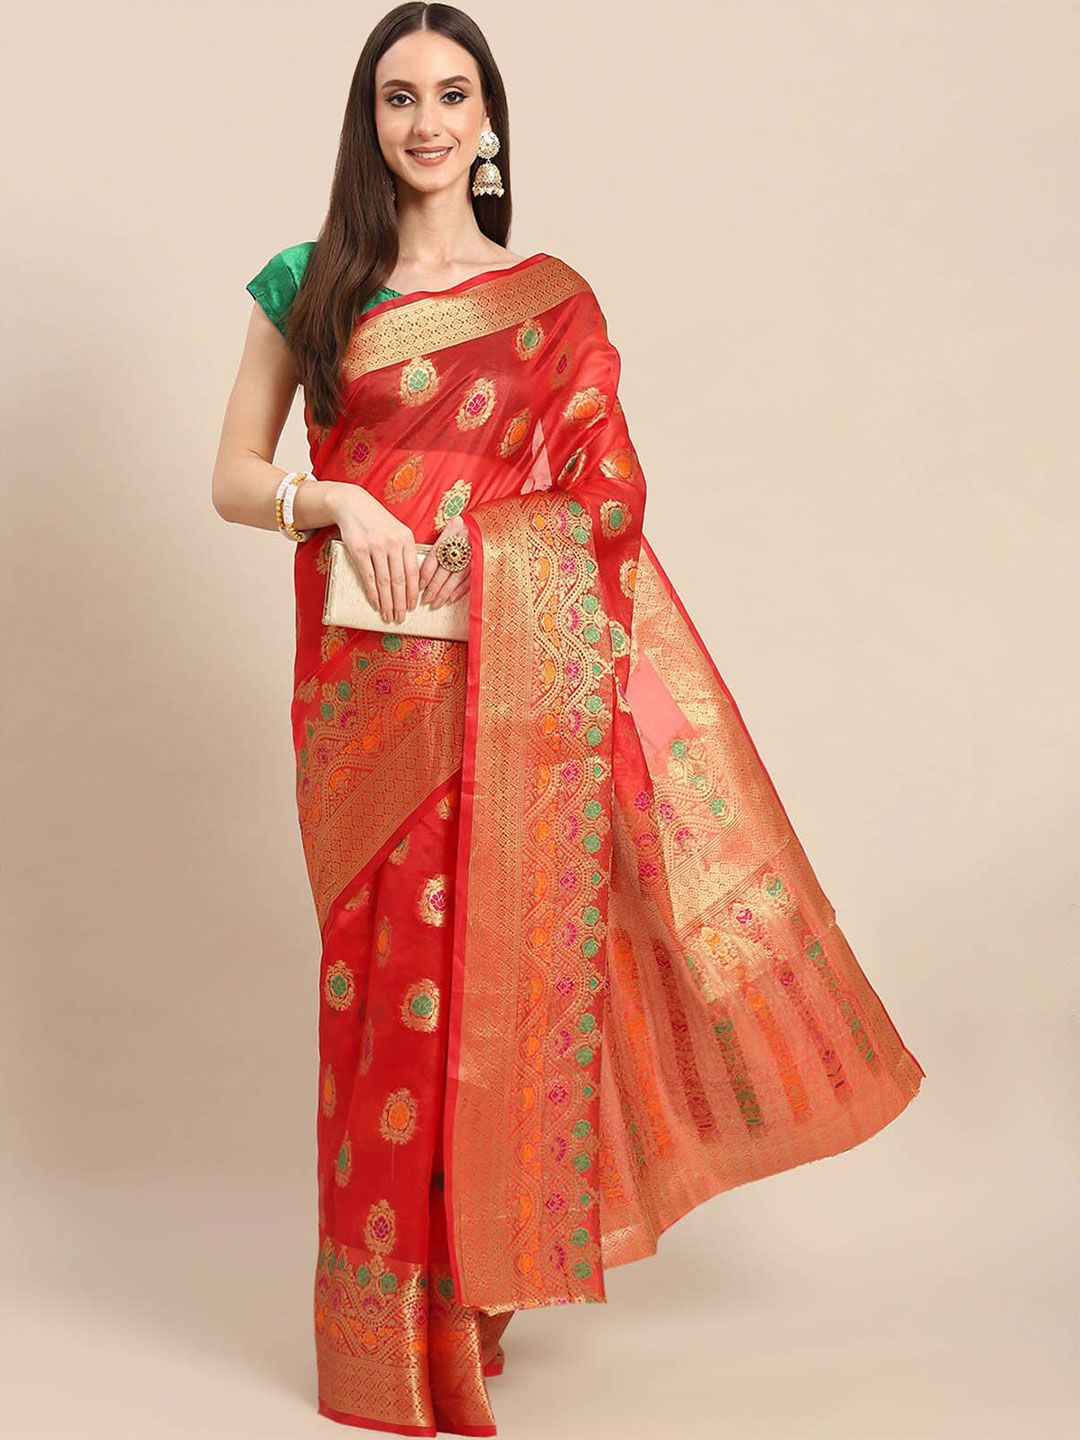 ODETTE Red & Gold-Toned Woven Design Zari Organza Saree Price in India